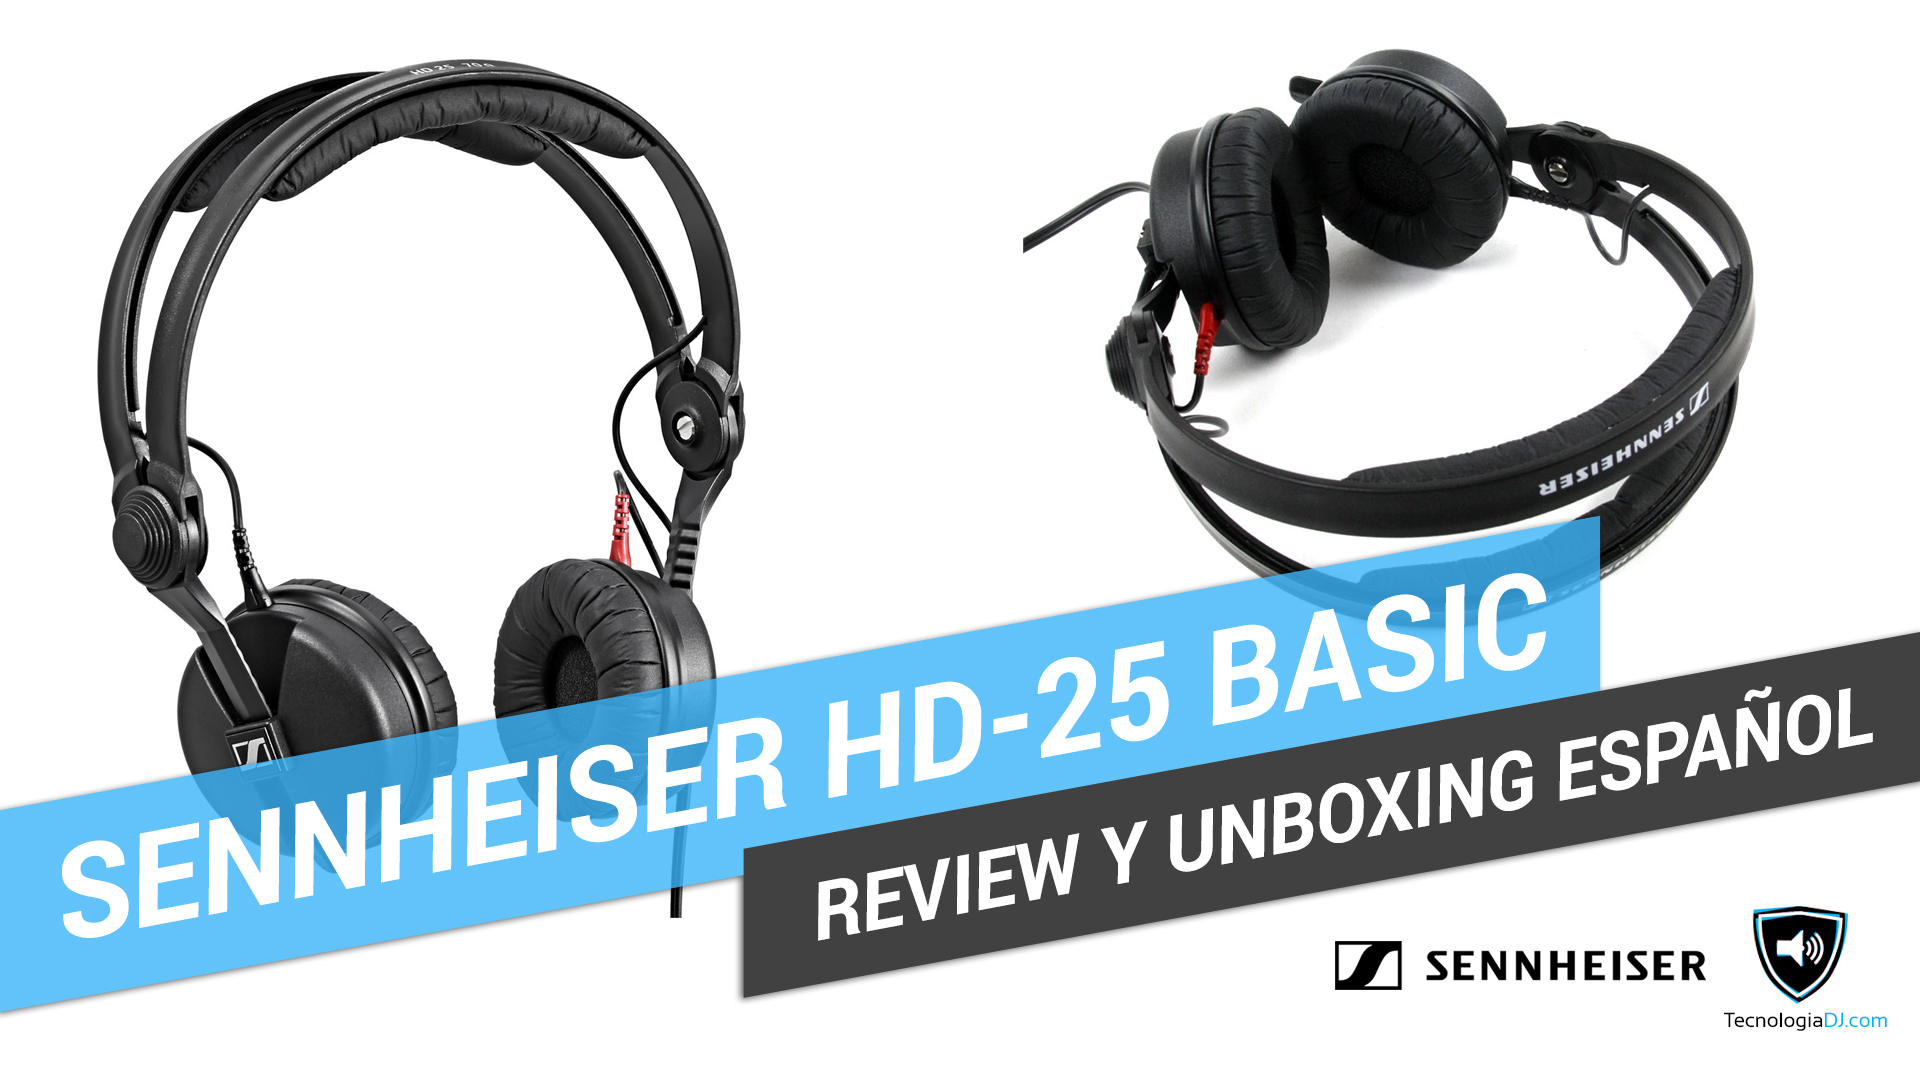 Review y unboxing en español auriculares Sennheiser HD 25 Basic